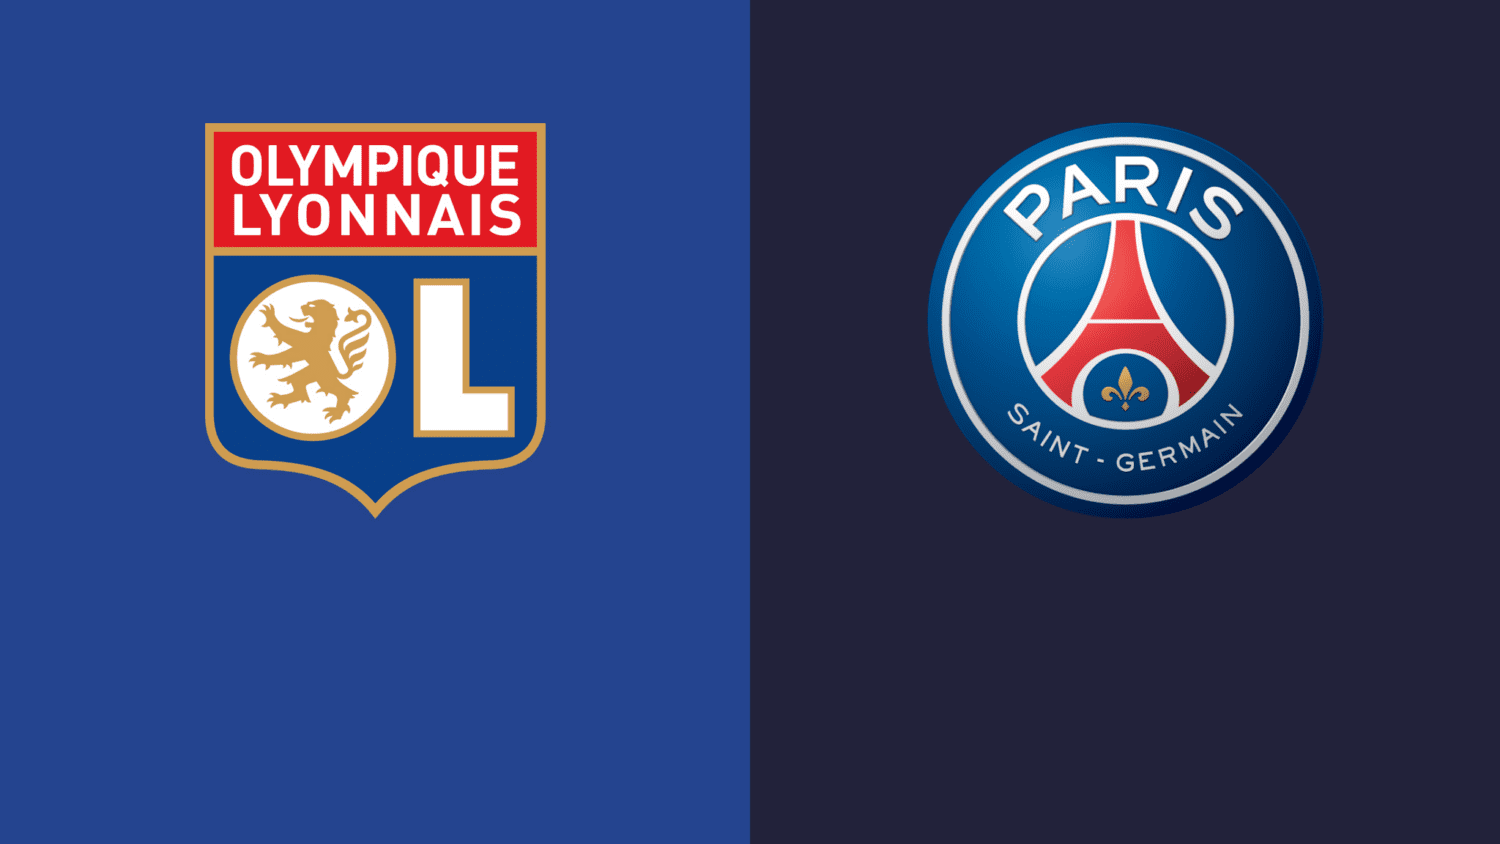 Ligue 1, Lione-PSG: pronostico, probabili formazioni e quote (21/03/2021)